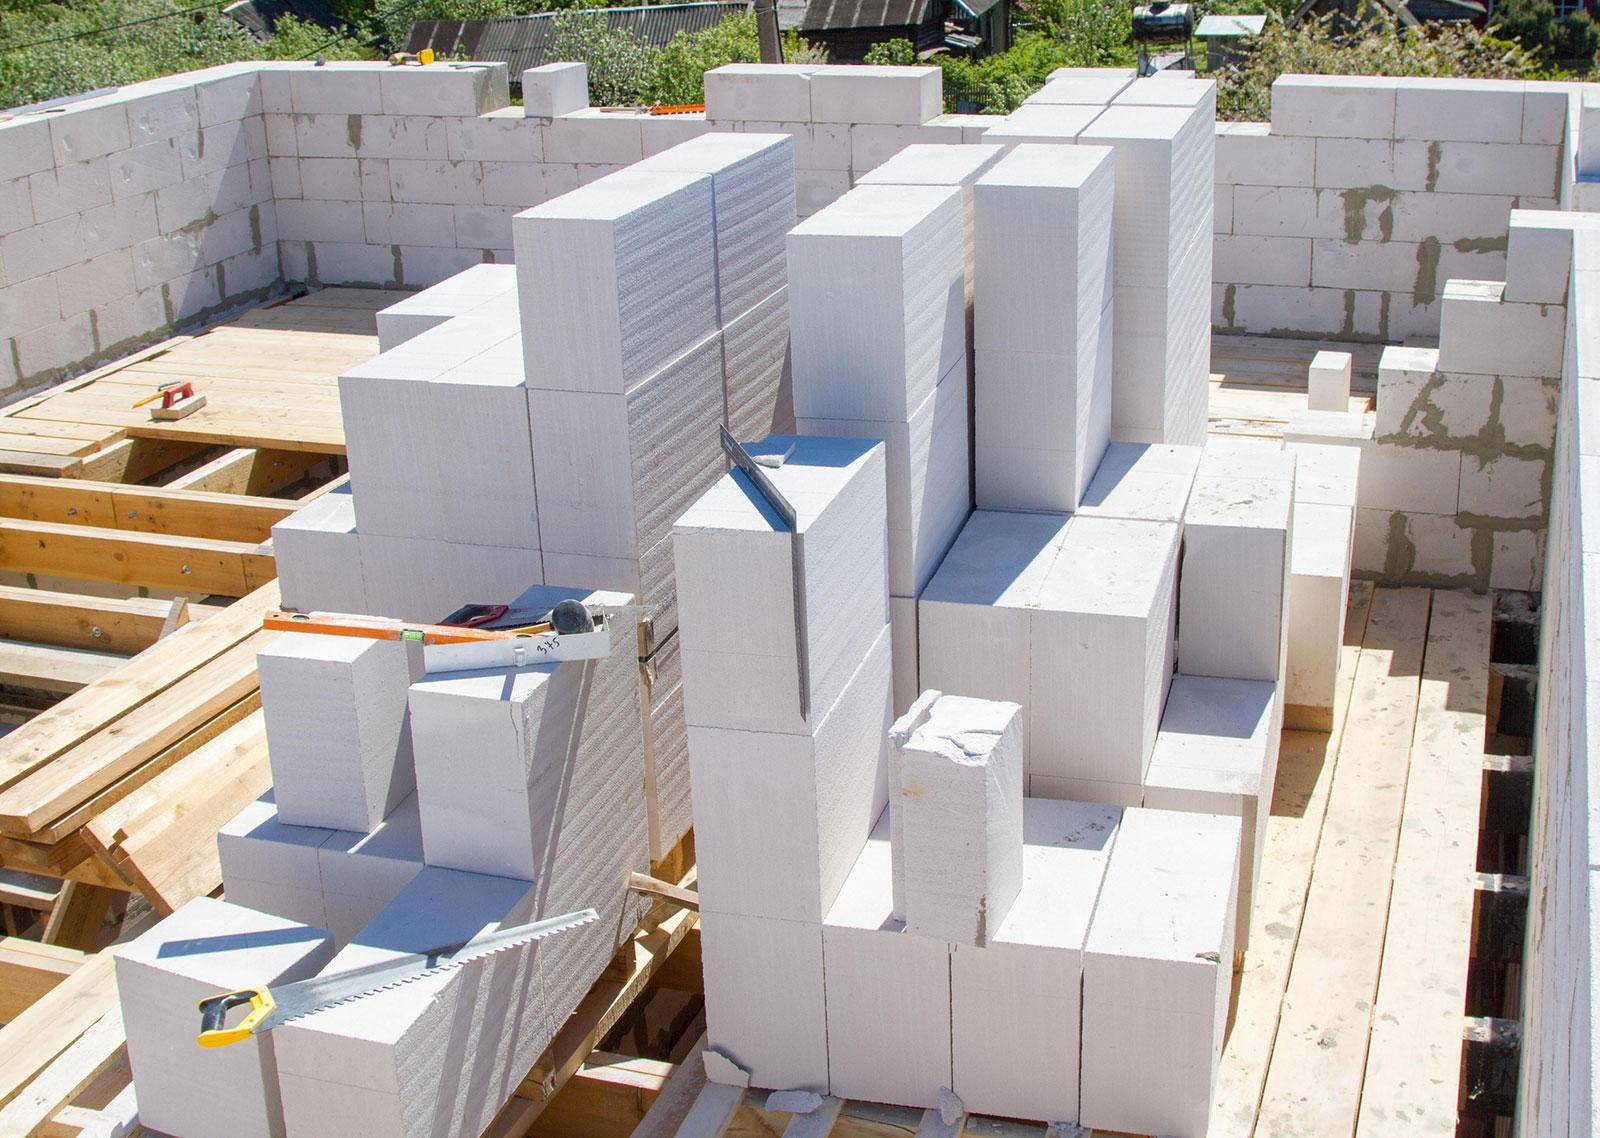 Сравните 10 видов современных блоков и узнайте, какой лучше подойдет для строительства дома.